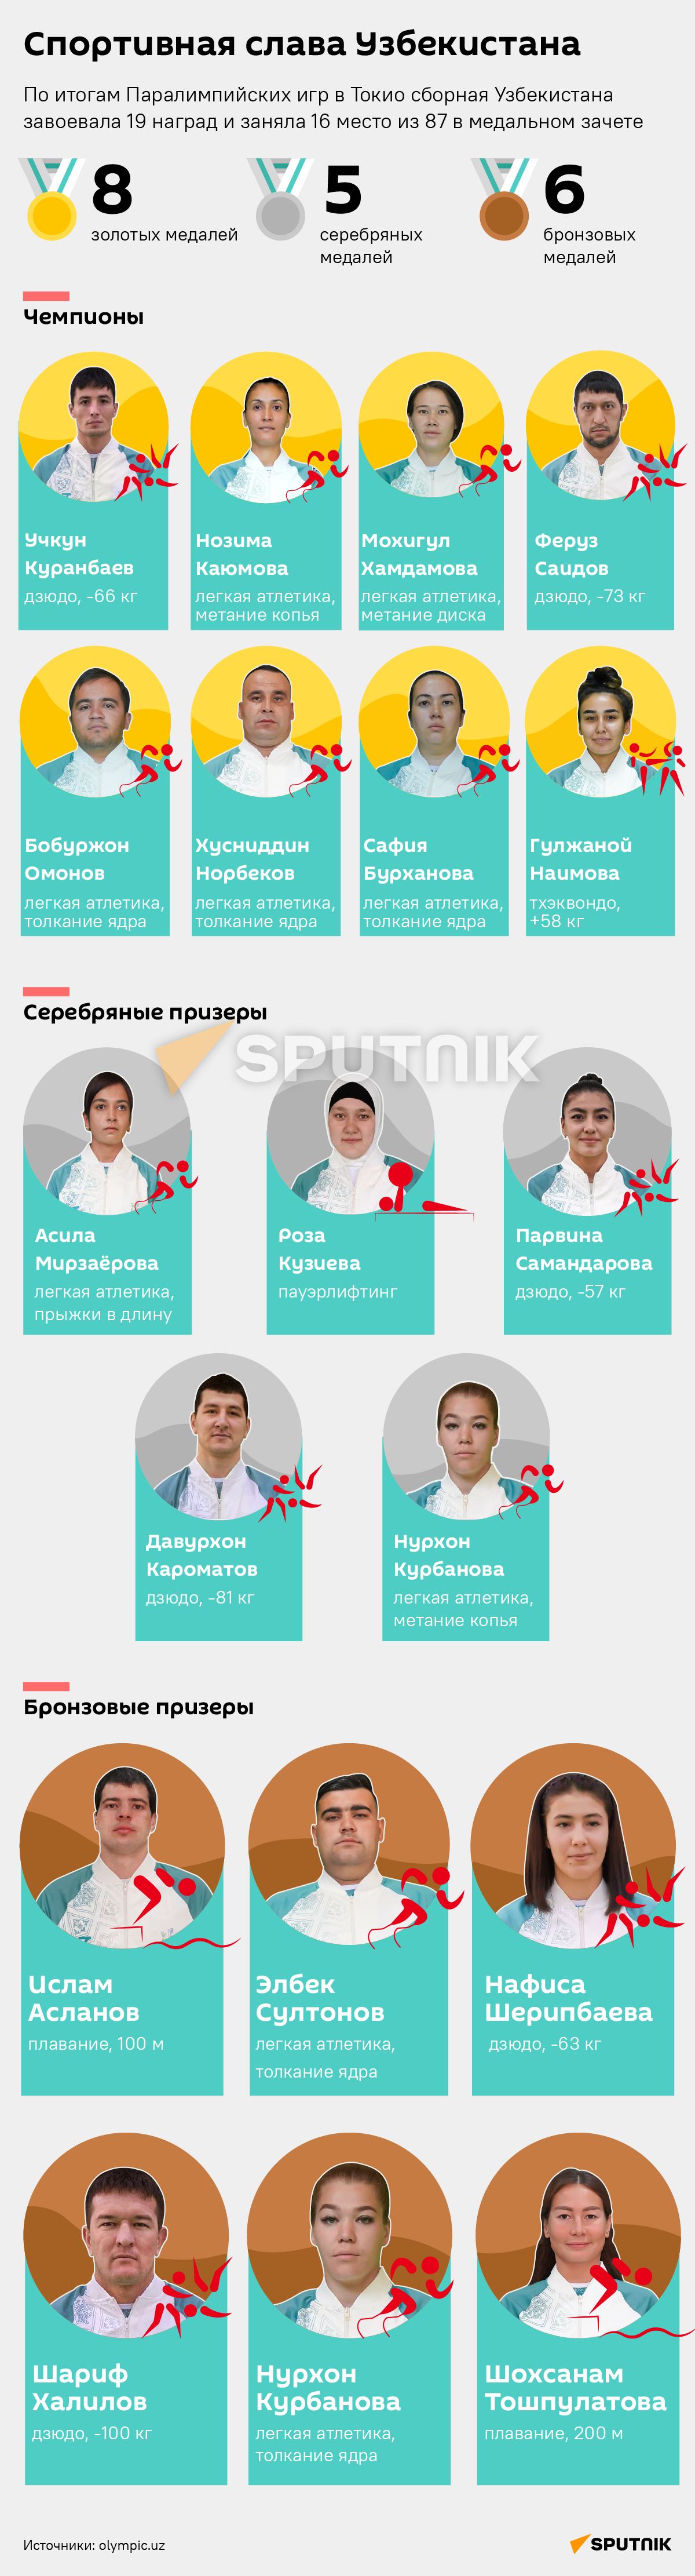 Спортивная слава Узбекистана - Sputnik Узбекистан